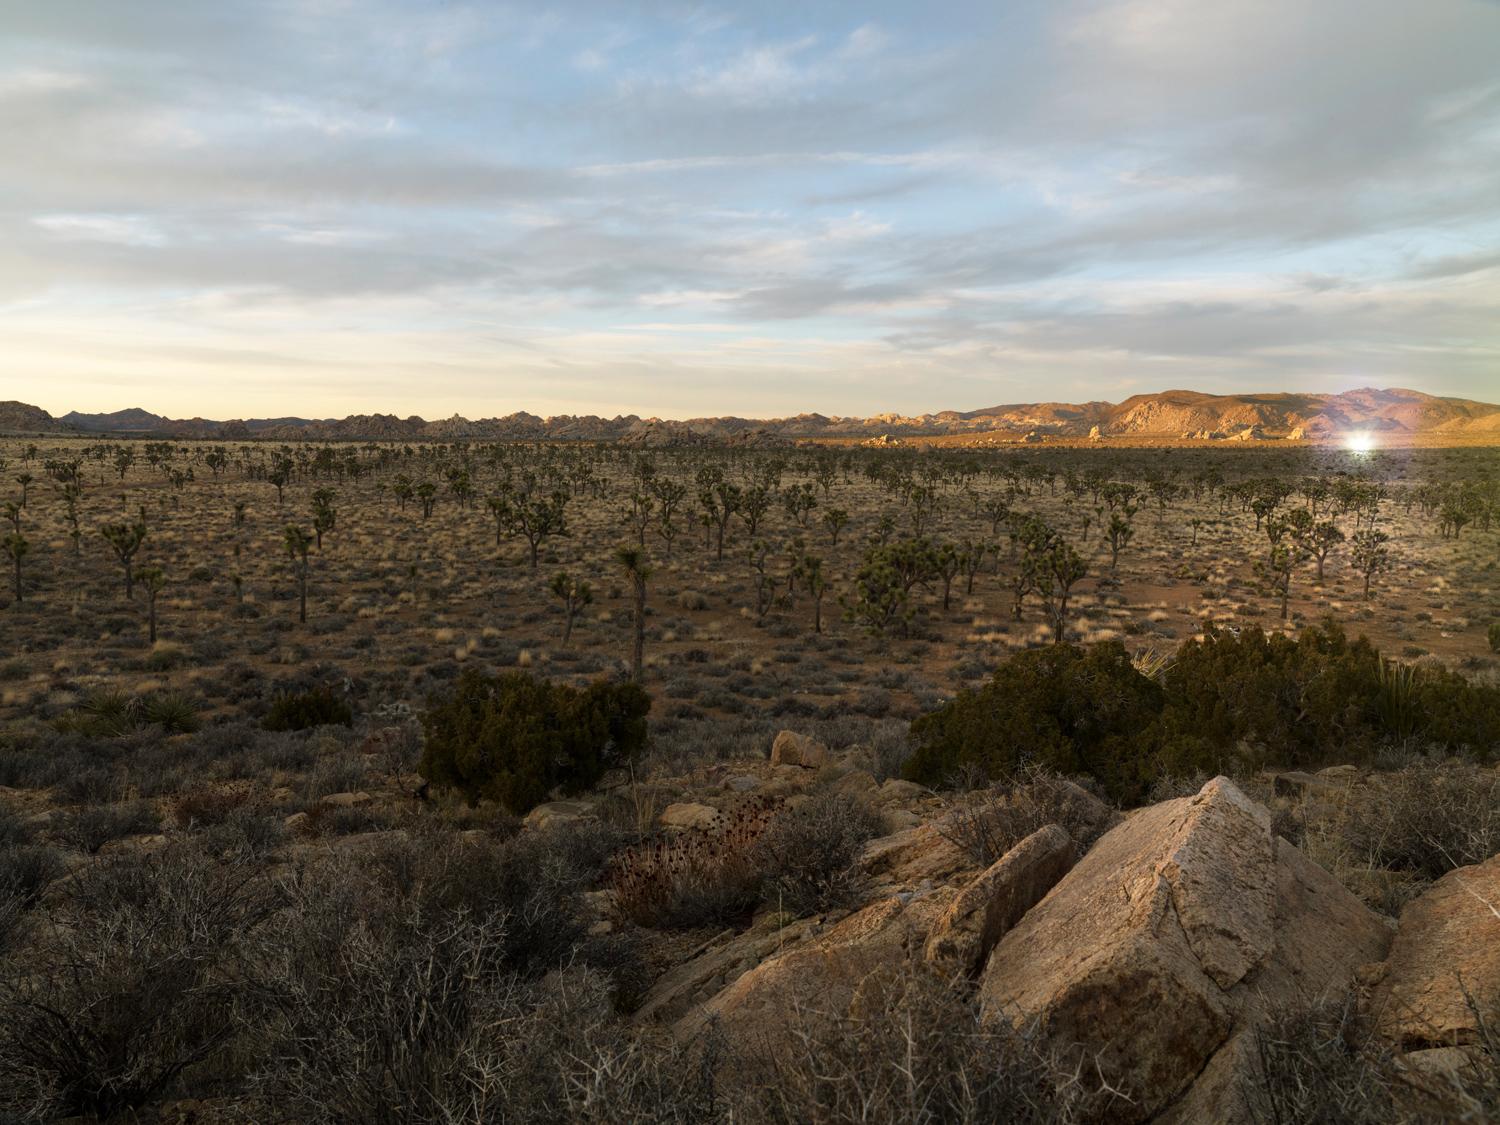 Desert Daze - light effect in California desert landscape with endless horizon